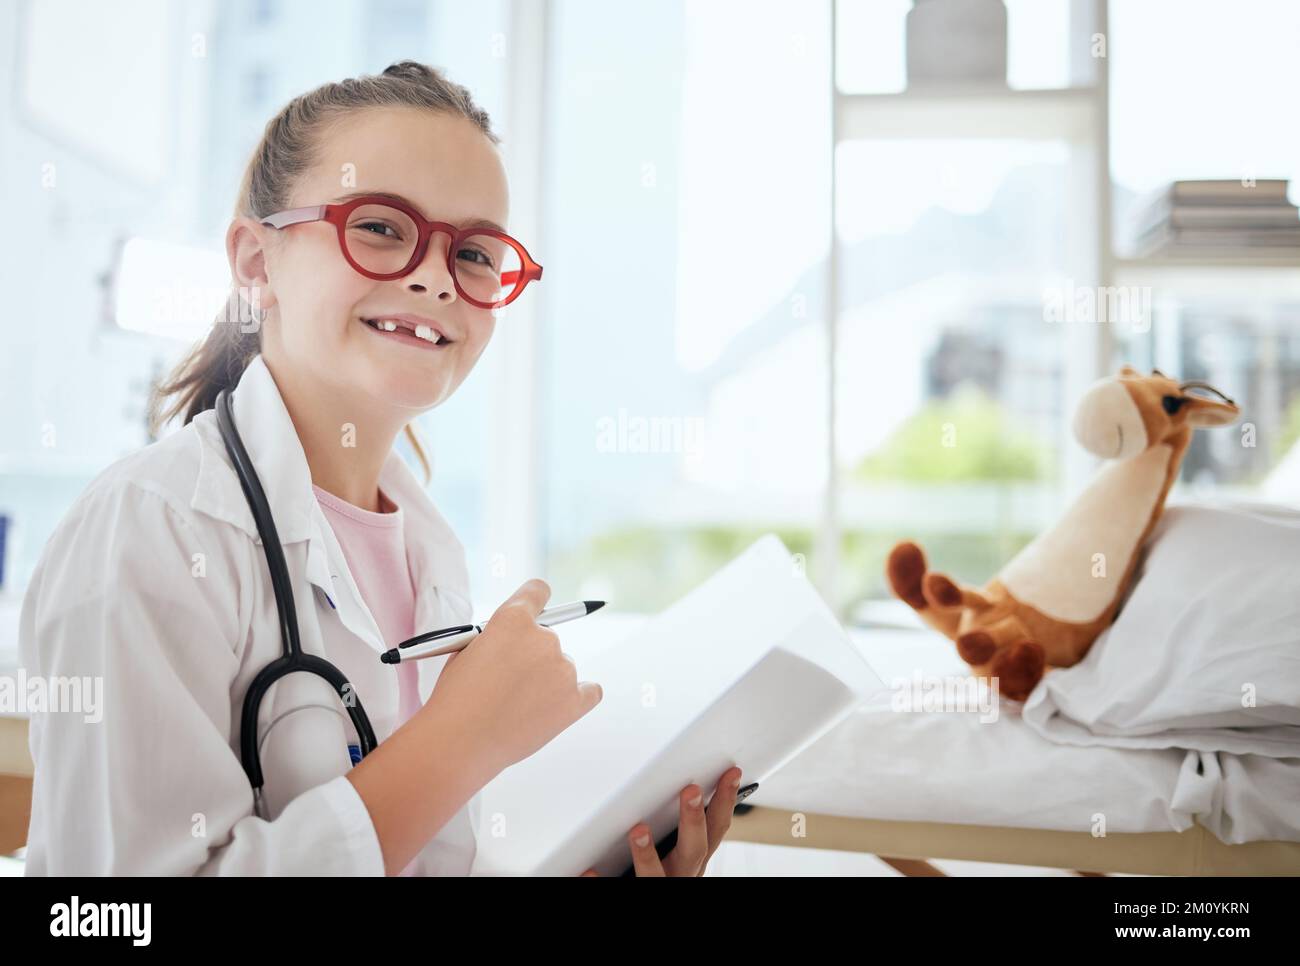 Immaginate di essere chi sognate di essere. una bambina che finge di essere un medico mentre esamina il suo animale farcito a casa. Foto Stock